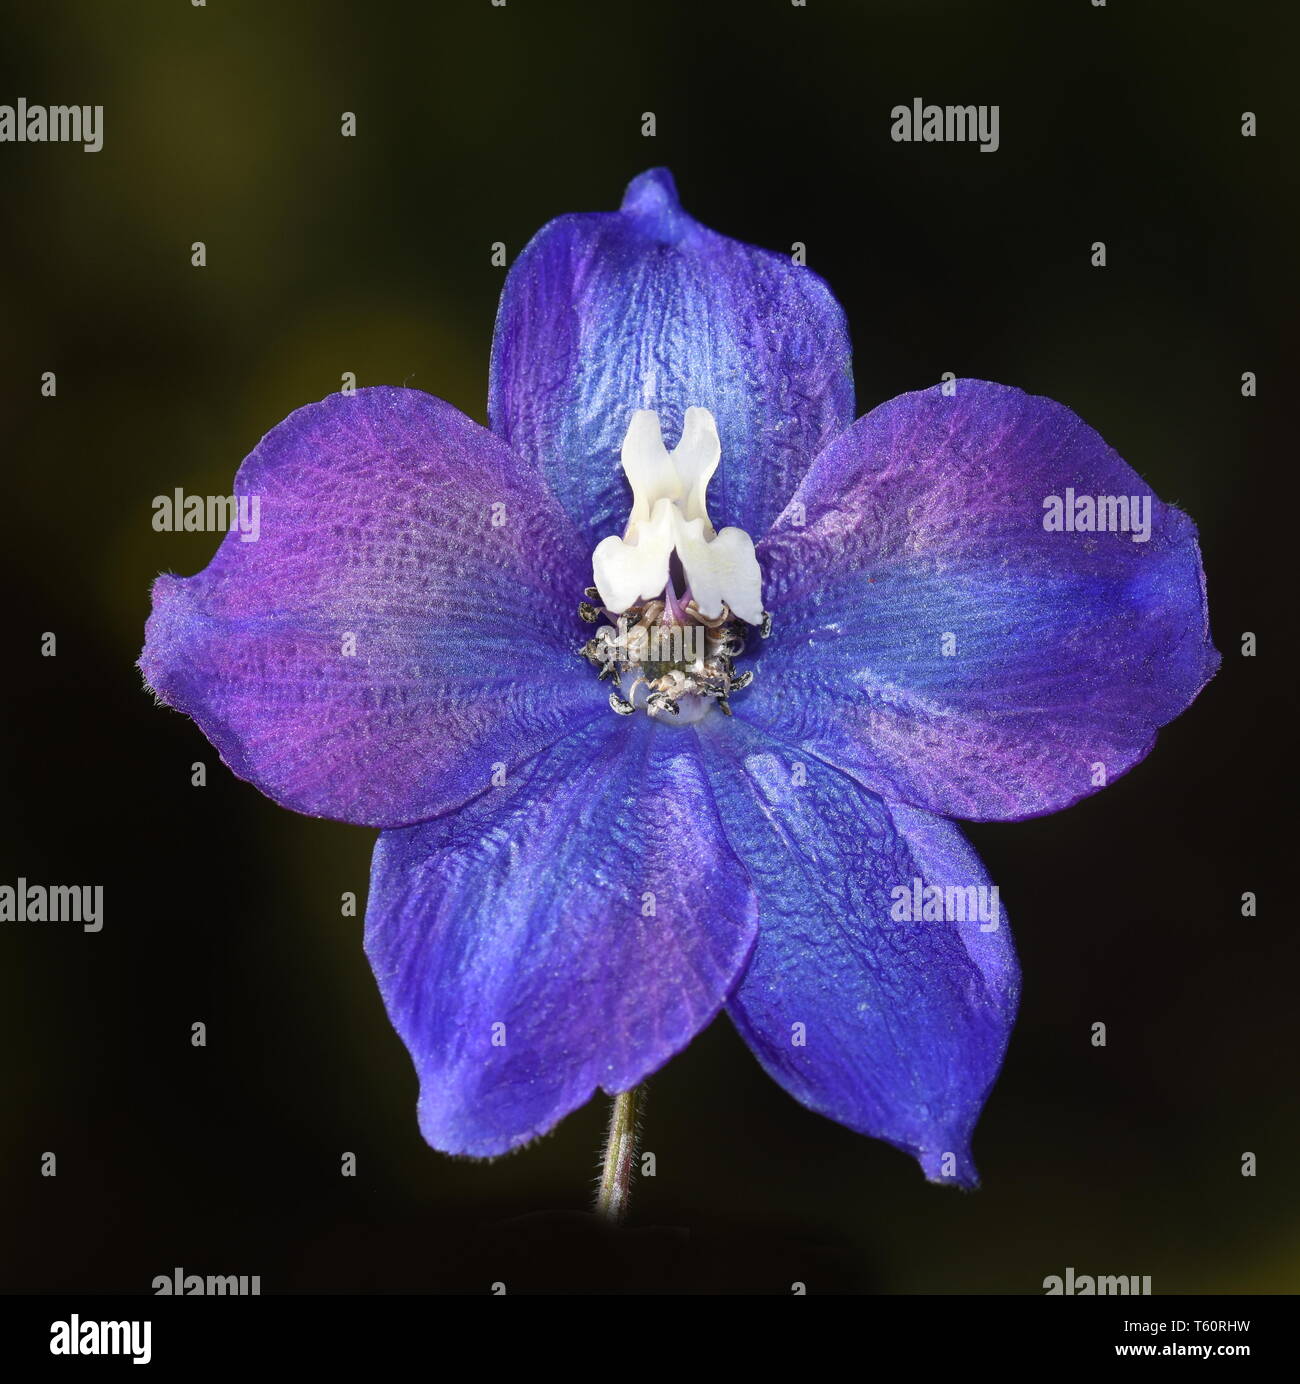 Nahaufnahme auf blauer Rittersporn Blume auf dunkelgrünem Hintergrund Stockfoto